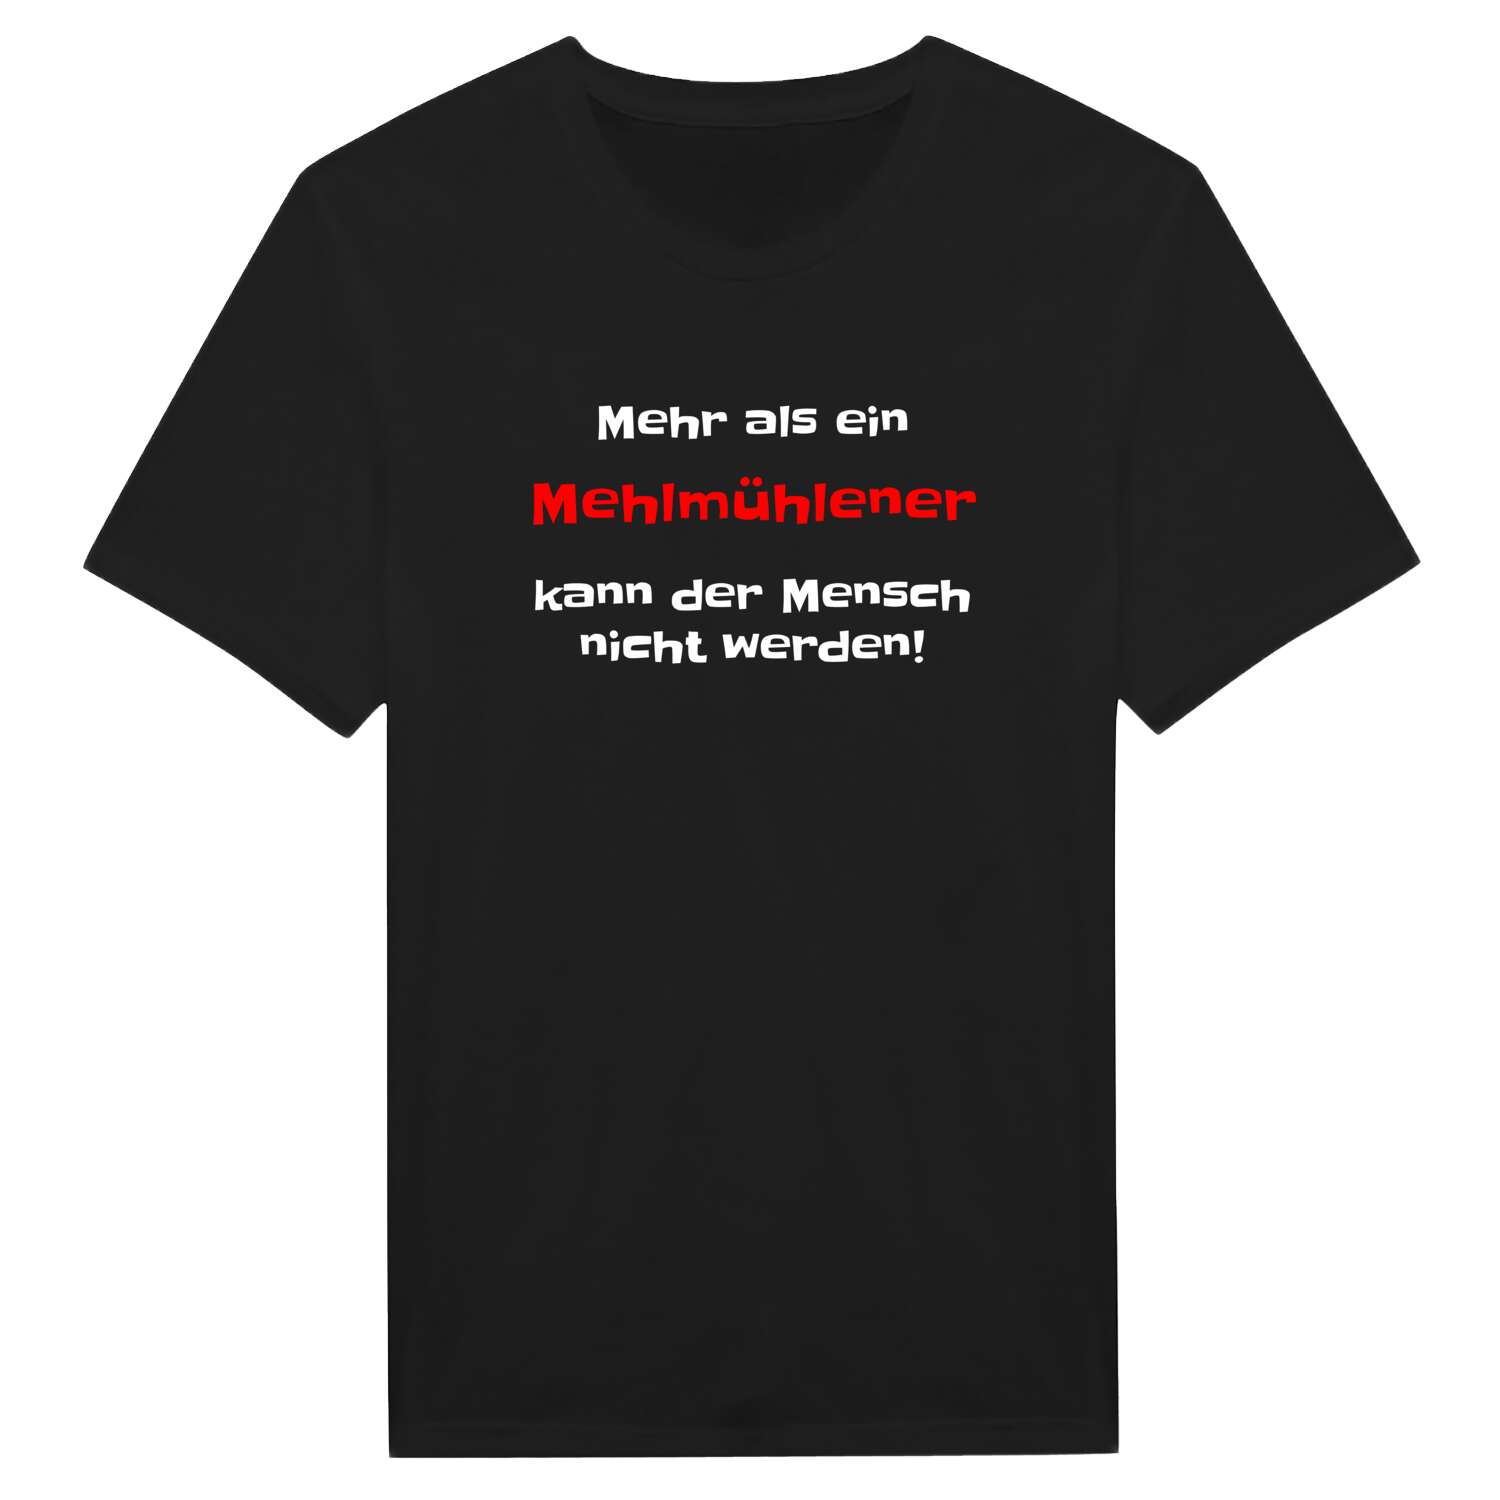 Mehlmühle T-Shirt »Mehr als ein«